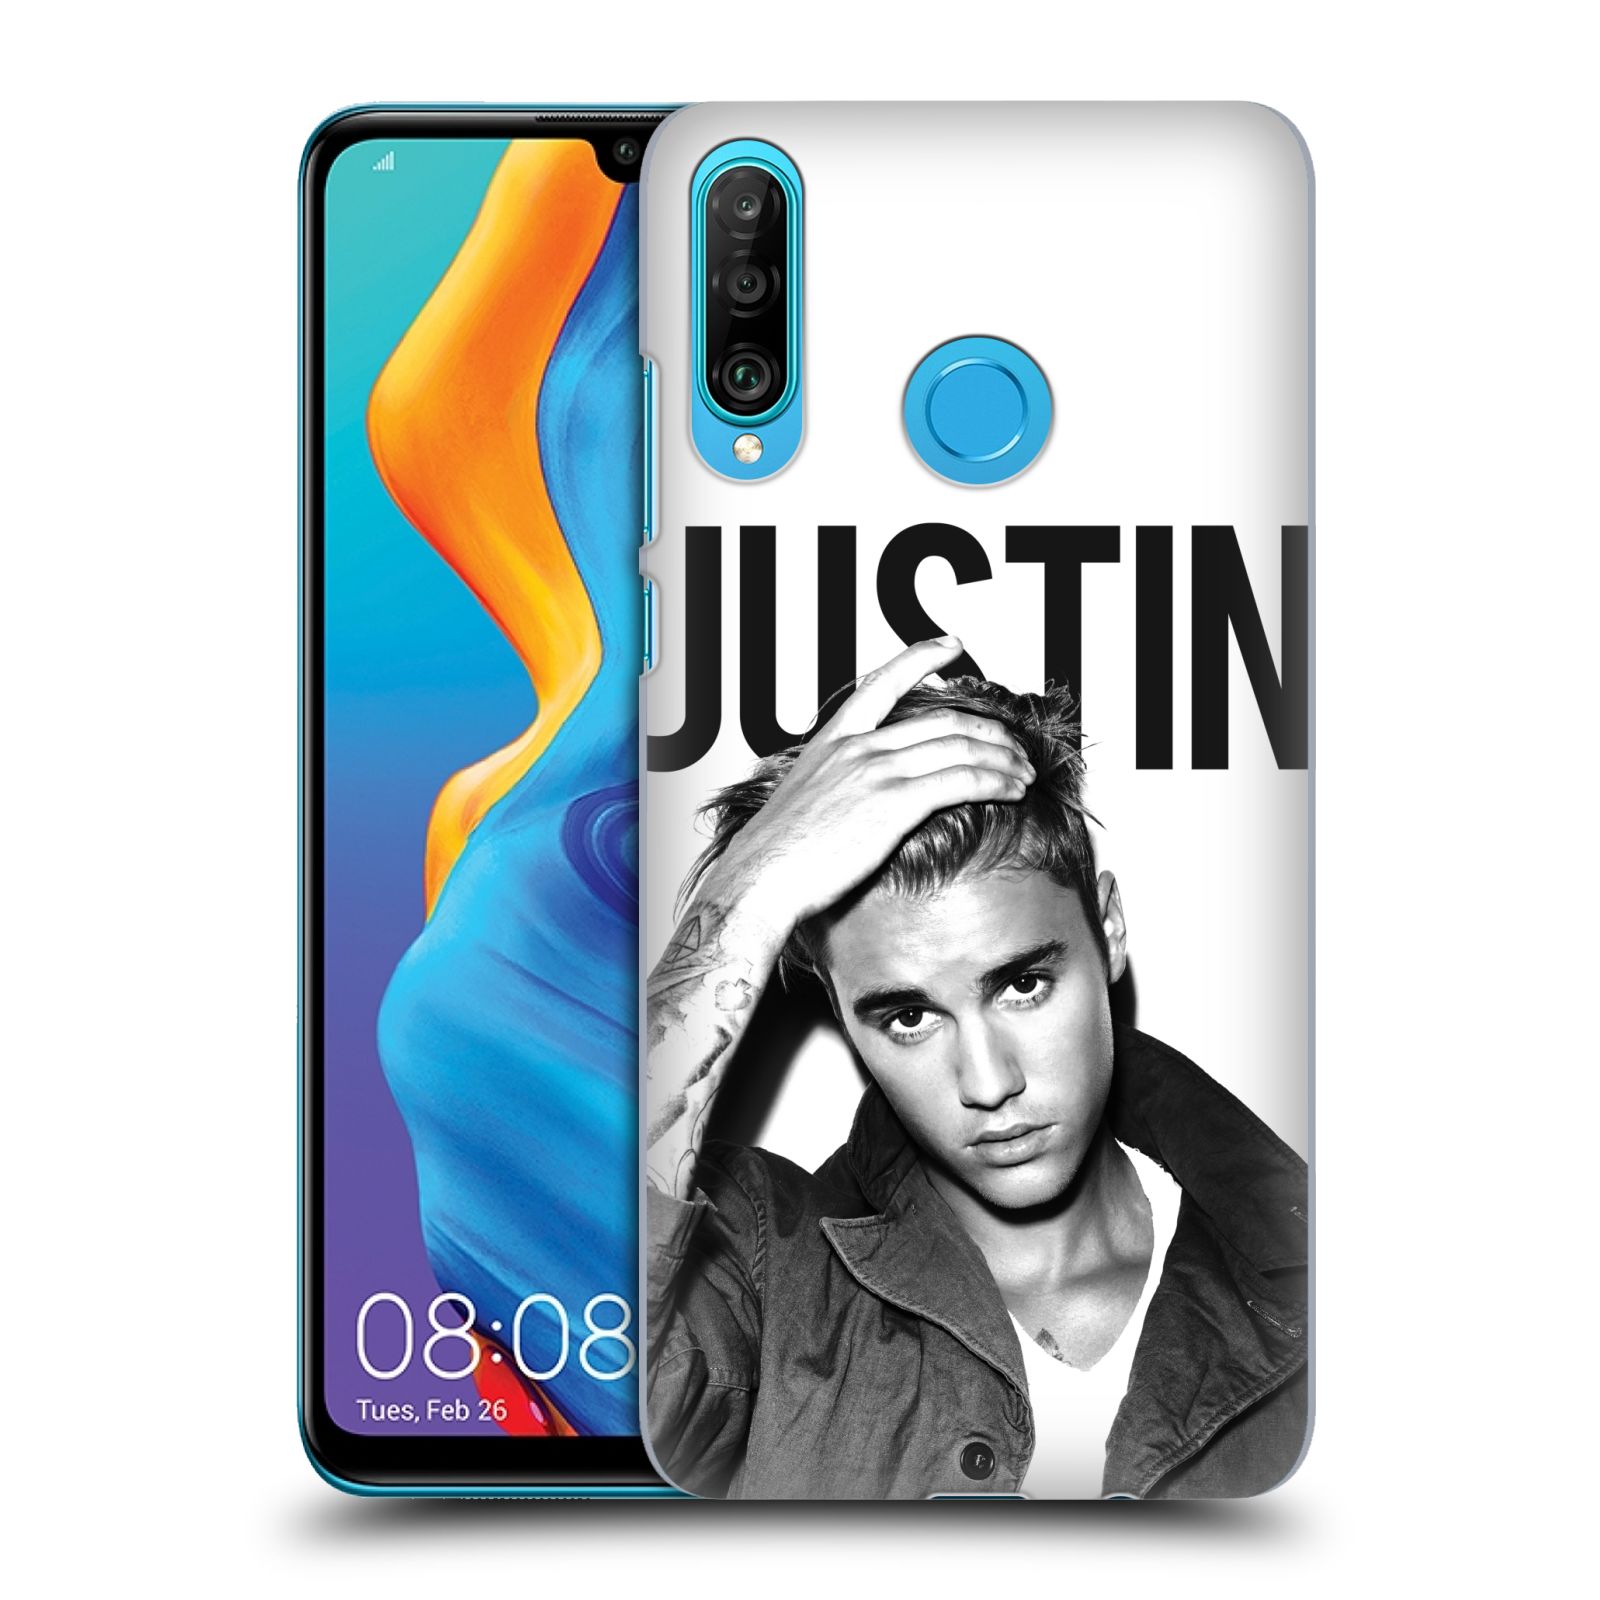 Pouzdro na mobil Huawei P30 LITE - HEAD CASE - Justin Bieber foto Purpose černá a bílá